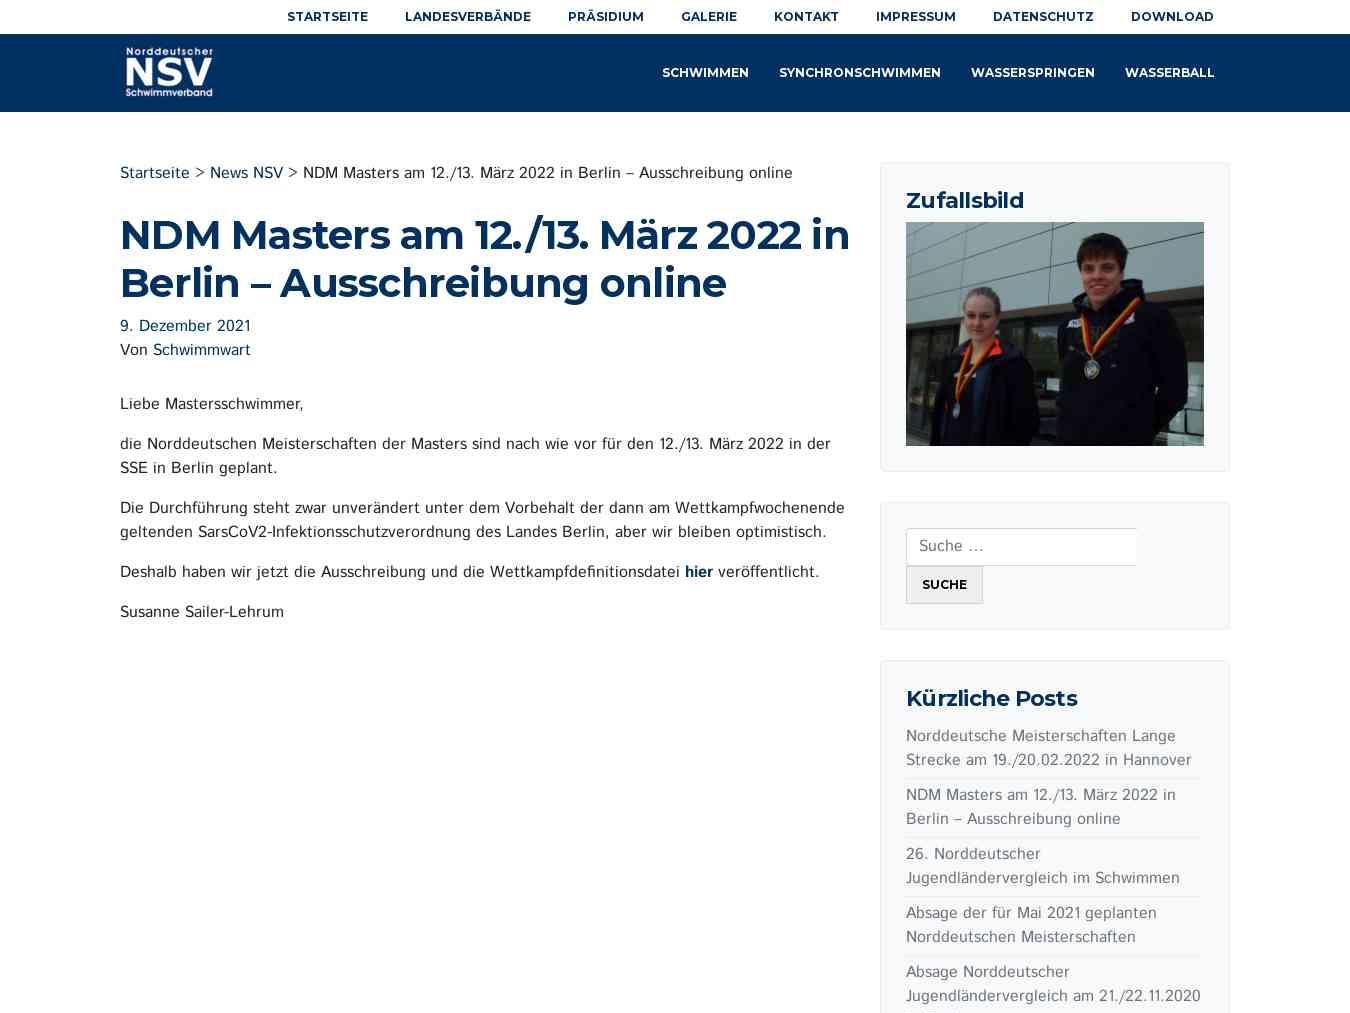 Veranstalterhomepage - https://www.norddeutscherschwimmverband.de/2021/12/09/ndm-masters-voraussichtlich-am-12-13-maerz-2022-in-berlin/